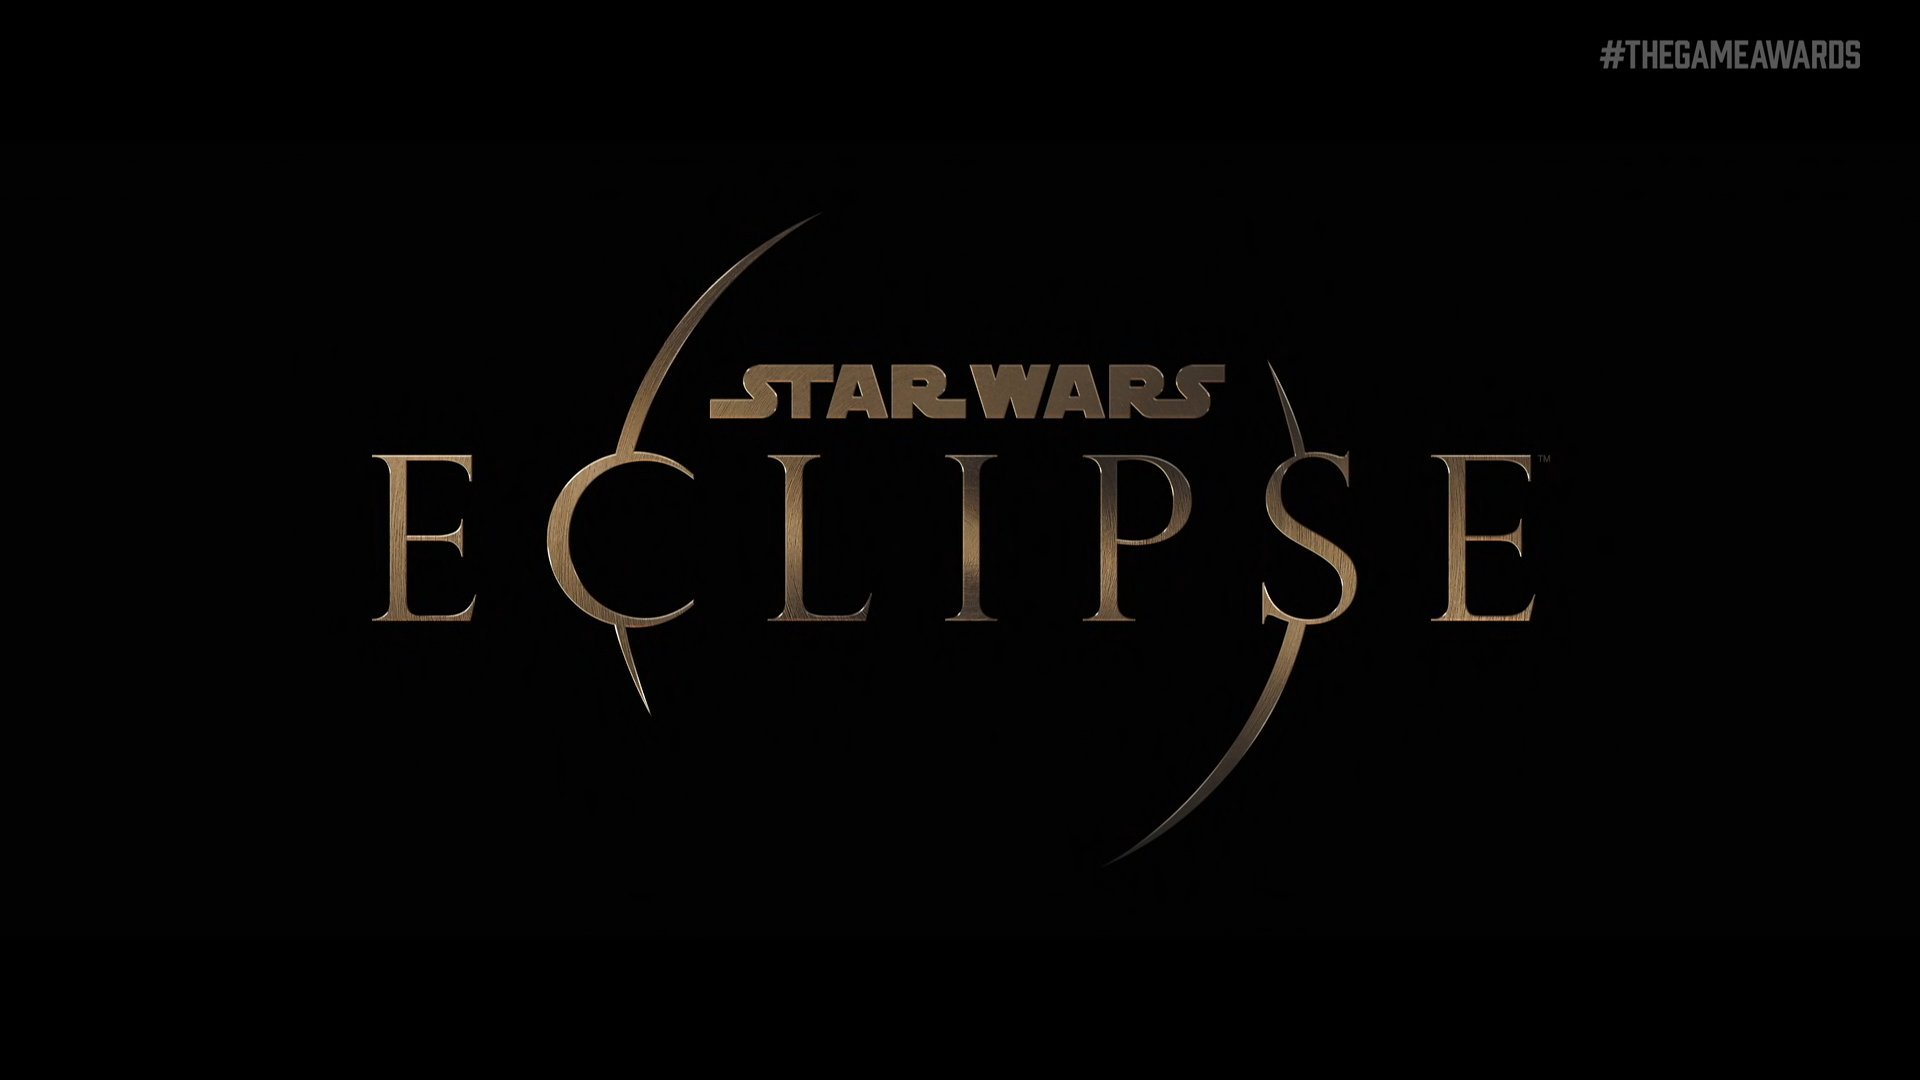 Star Wars Eclipse